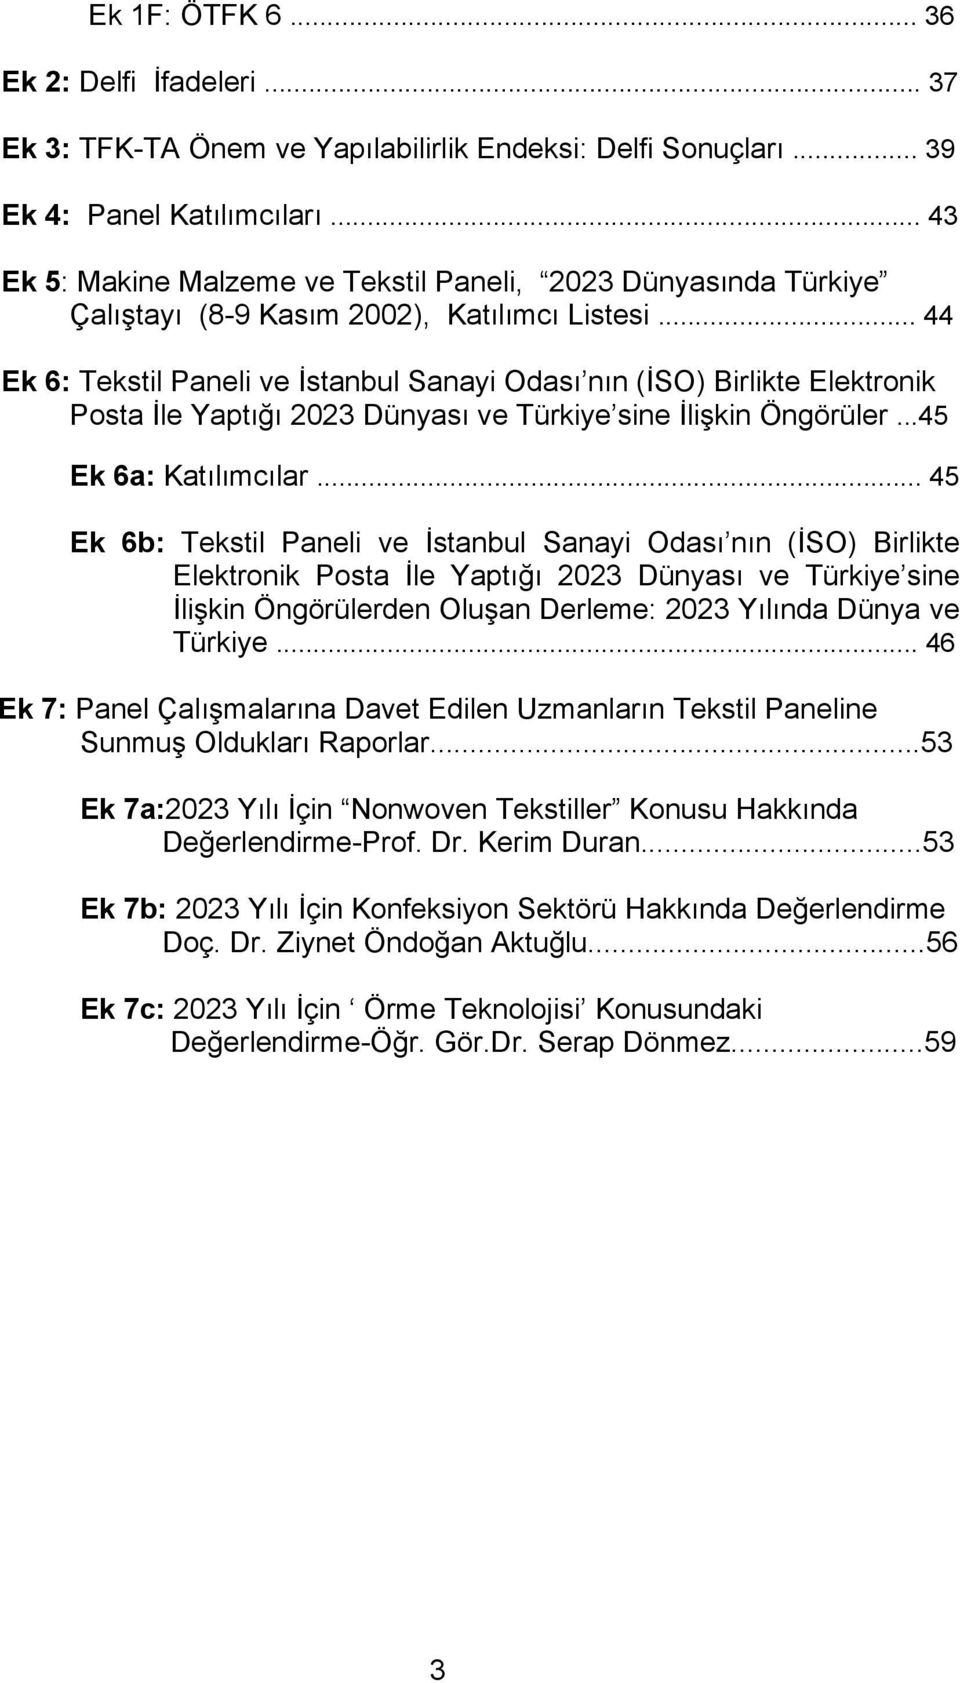 .. 44 Ek 6: Tekstil Paneli ve İstanbul Sanayi Odası nın (İSO) Birlikte Elektronik Posta İle Yaptığı 2023 Dünyası ve Türkiye sine İlişkin Öngörüler...45 Ek 6a: Katılımcılar.